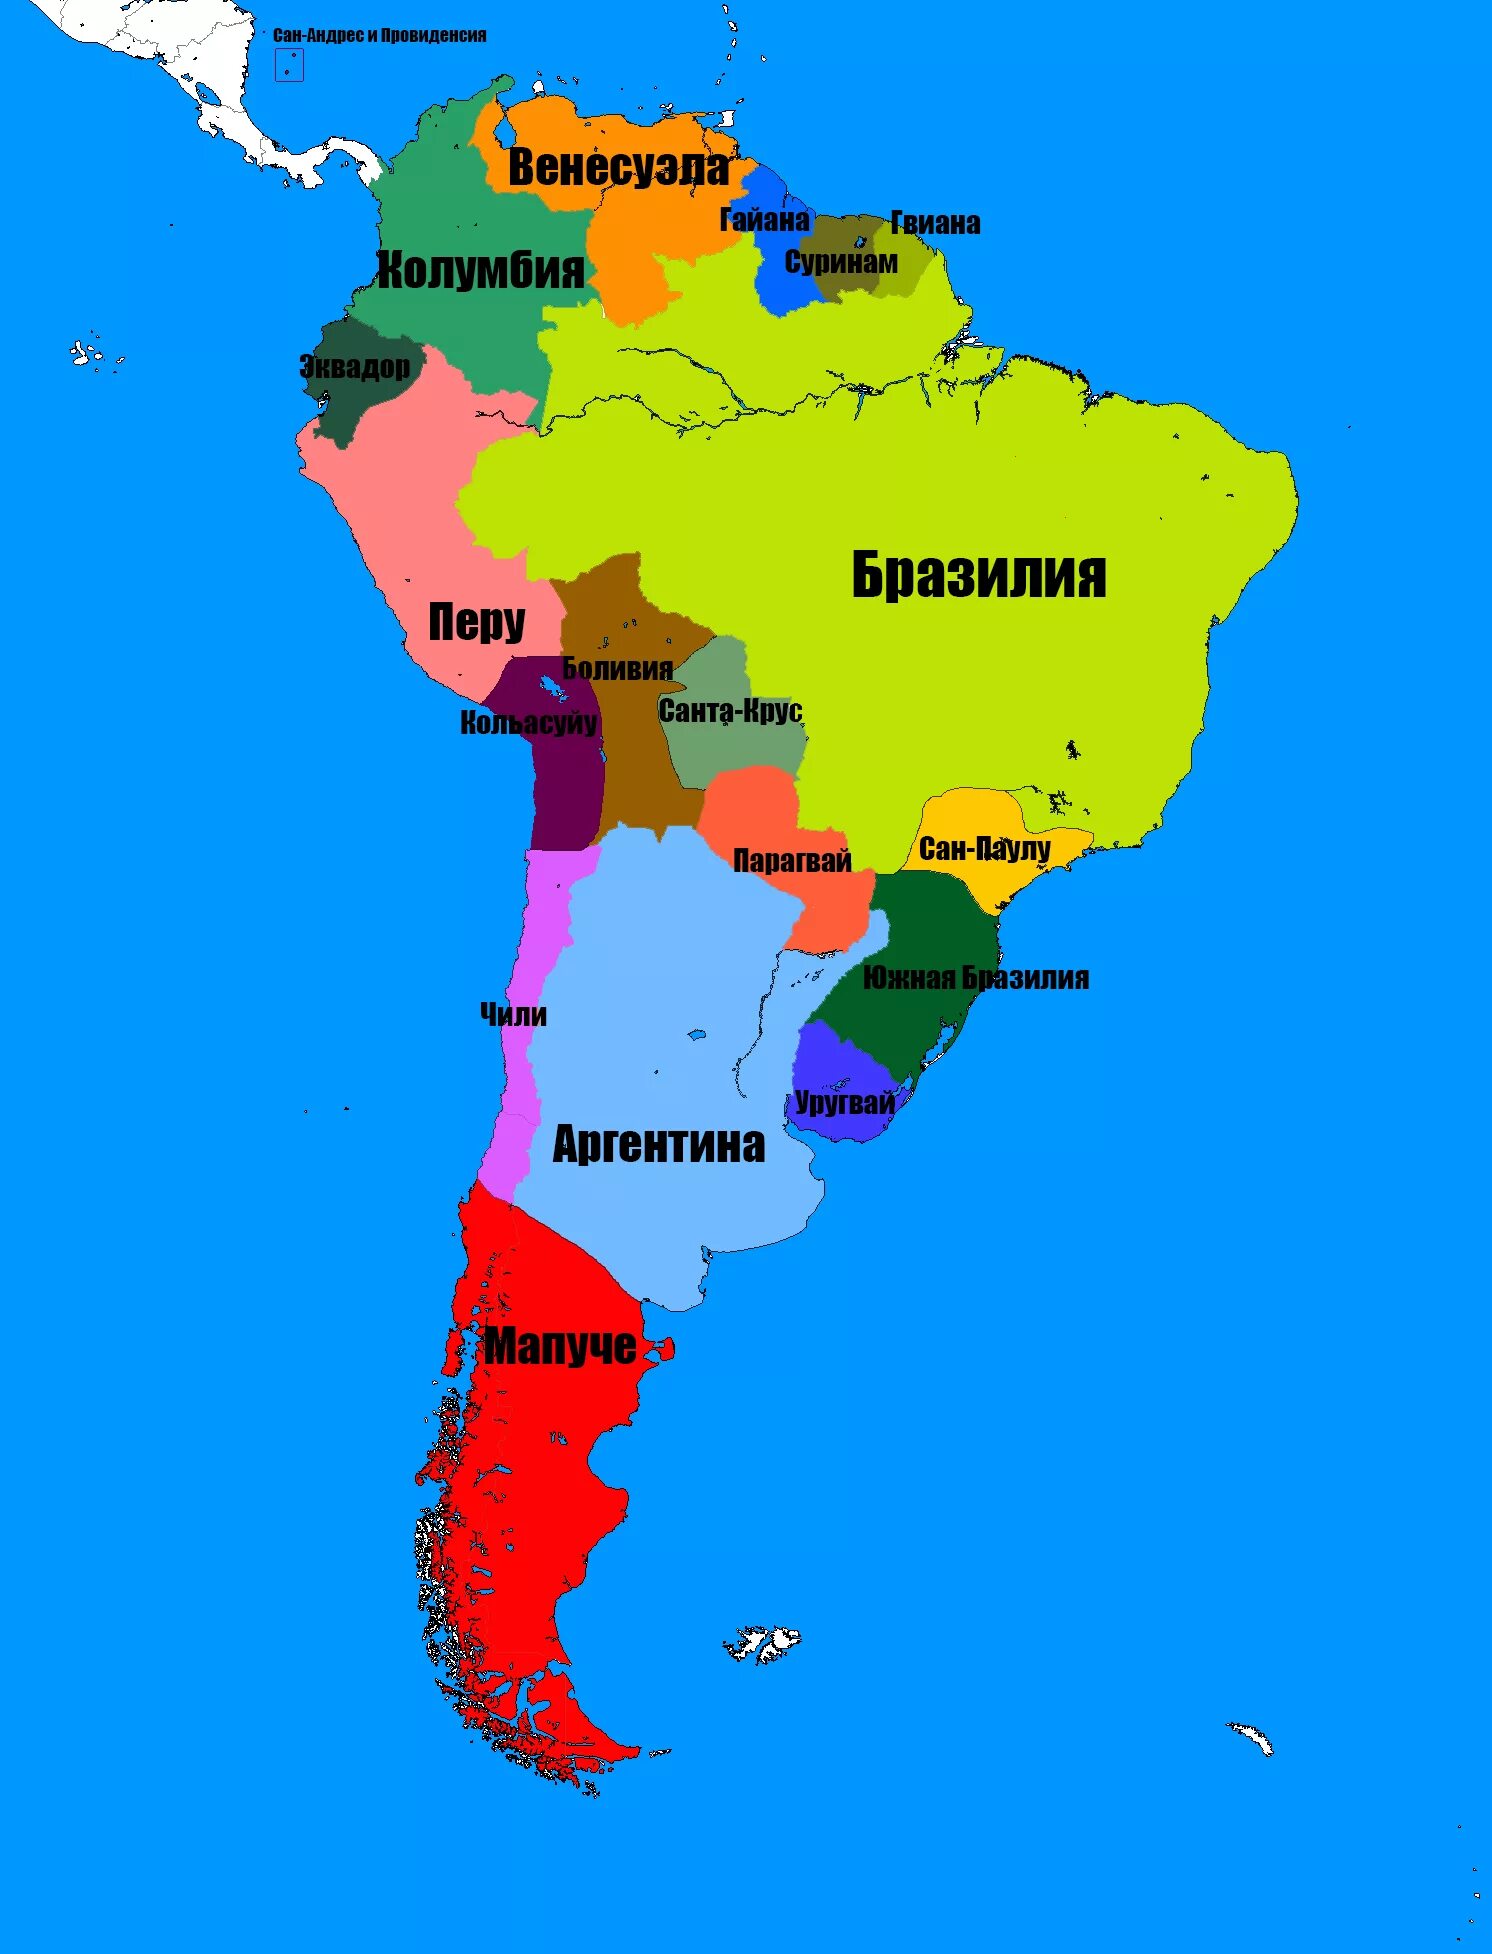 Карта стран Южной Америки со странами. Государства Южной Америки на карте. Границы государств Южной Америки. Карта Южной Америки с границами стран.